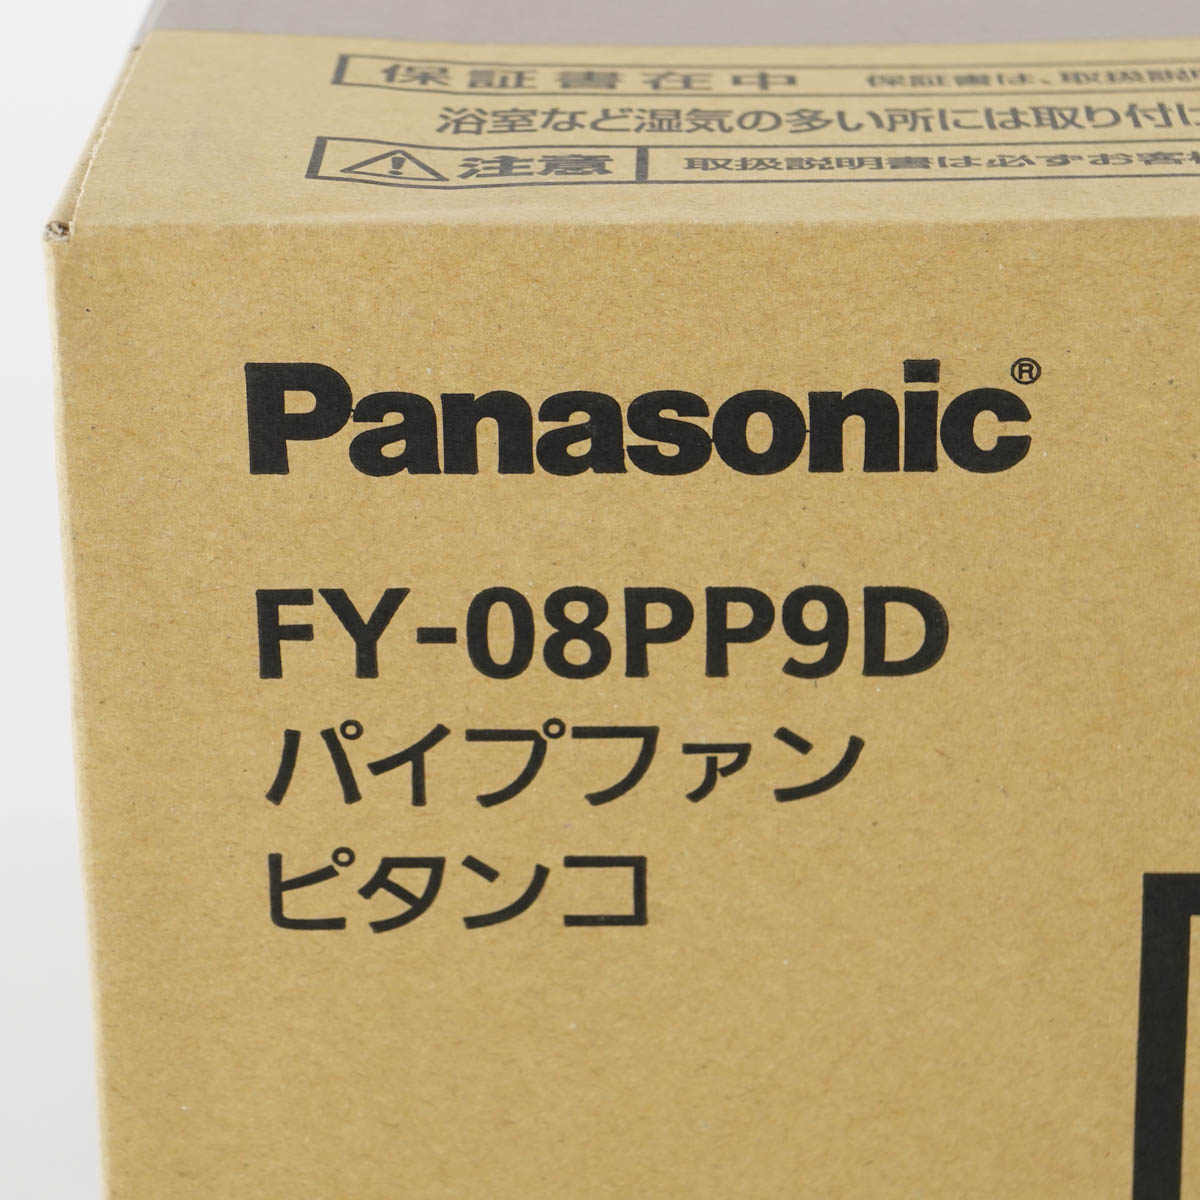 高品質 PG USED 8日保証 23台入荷 未使用品 Panasonic FY-08PP9D パイプファン ピタンコ パネル開閉式 連結端子 トイレ  洗面所 居間 04742-0448